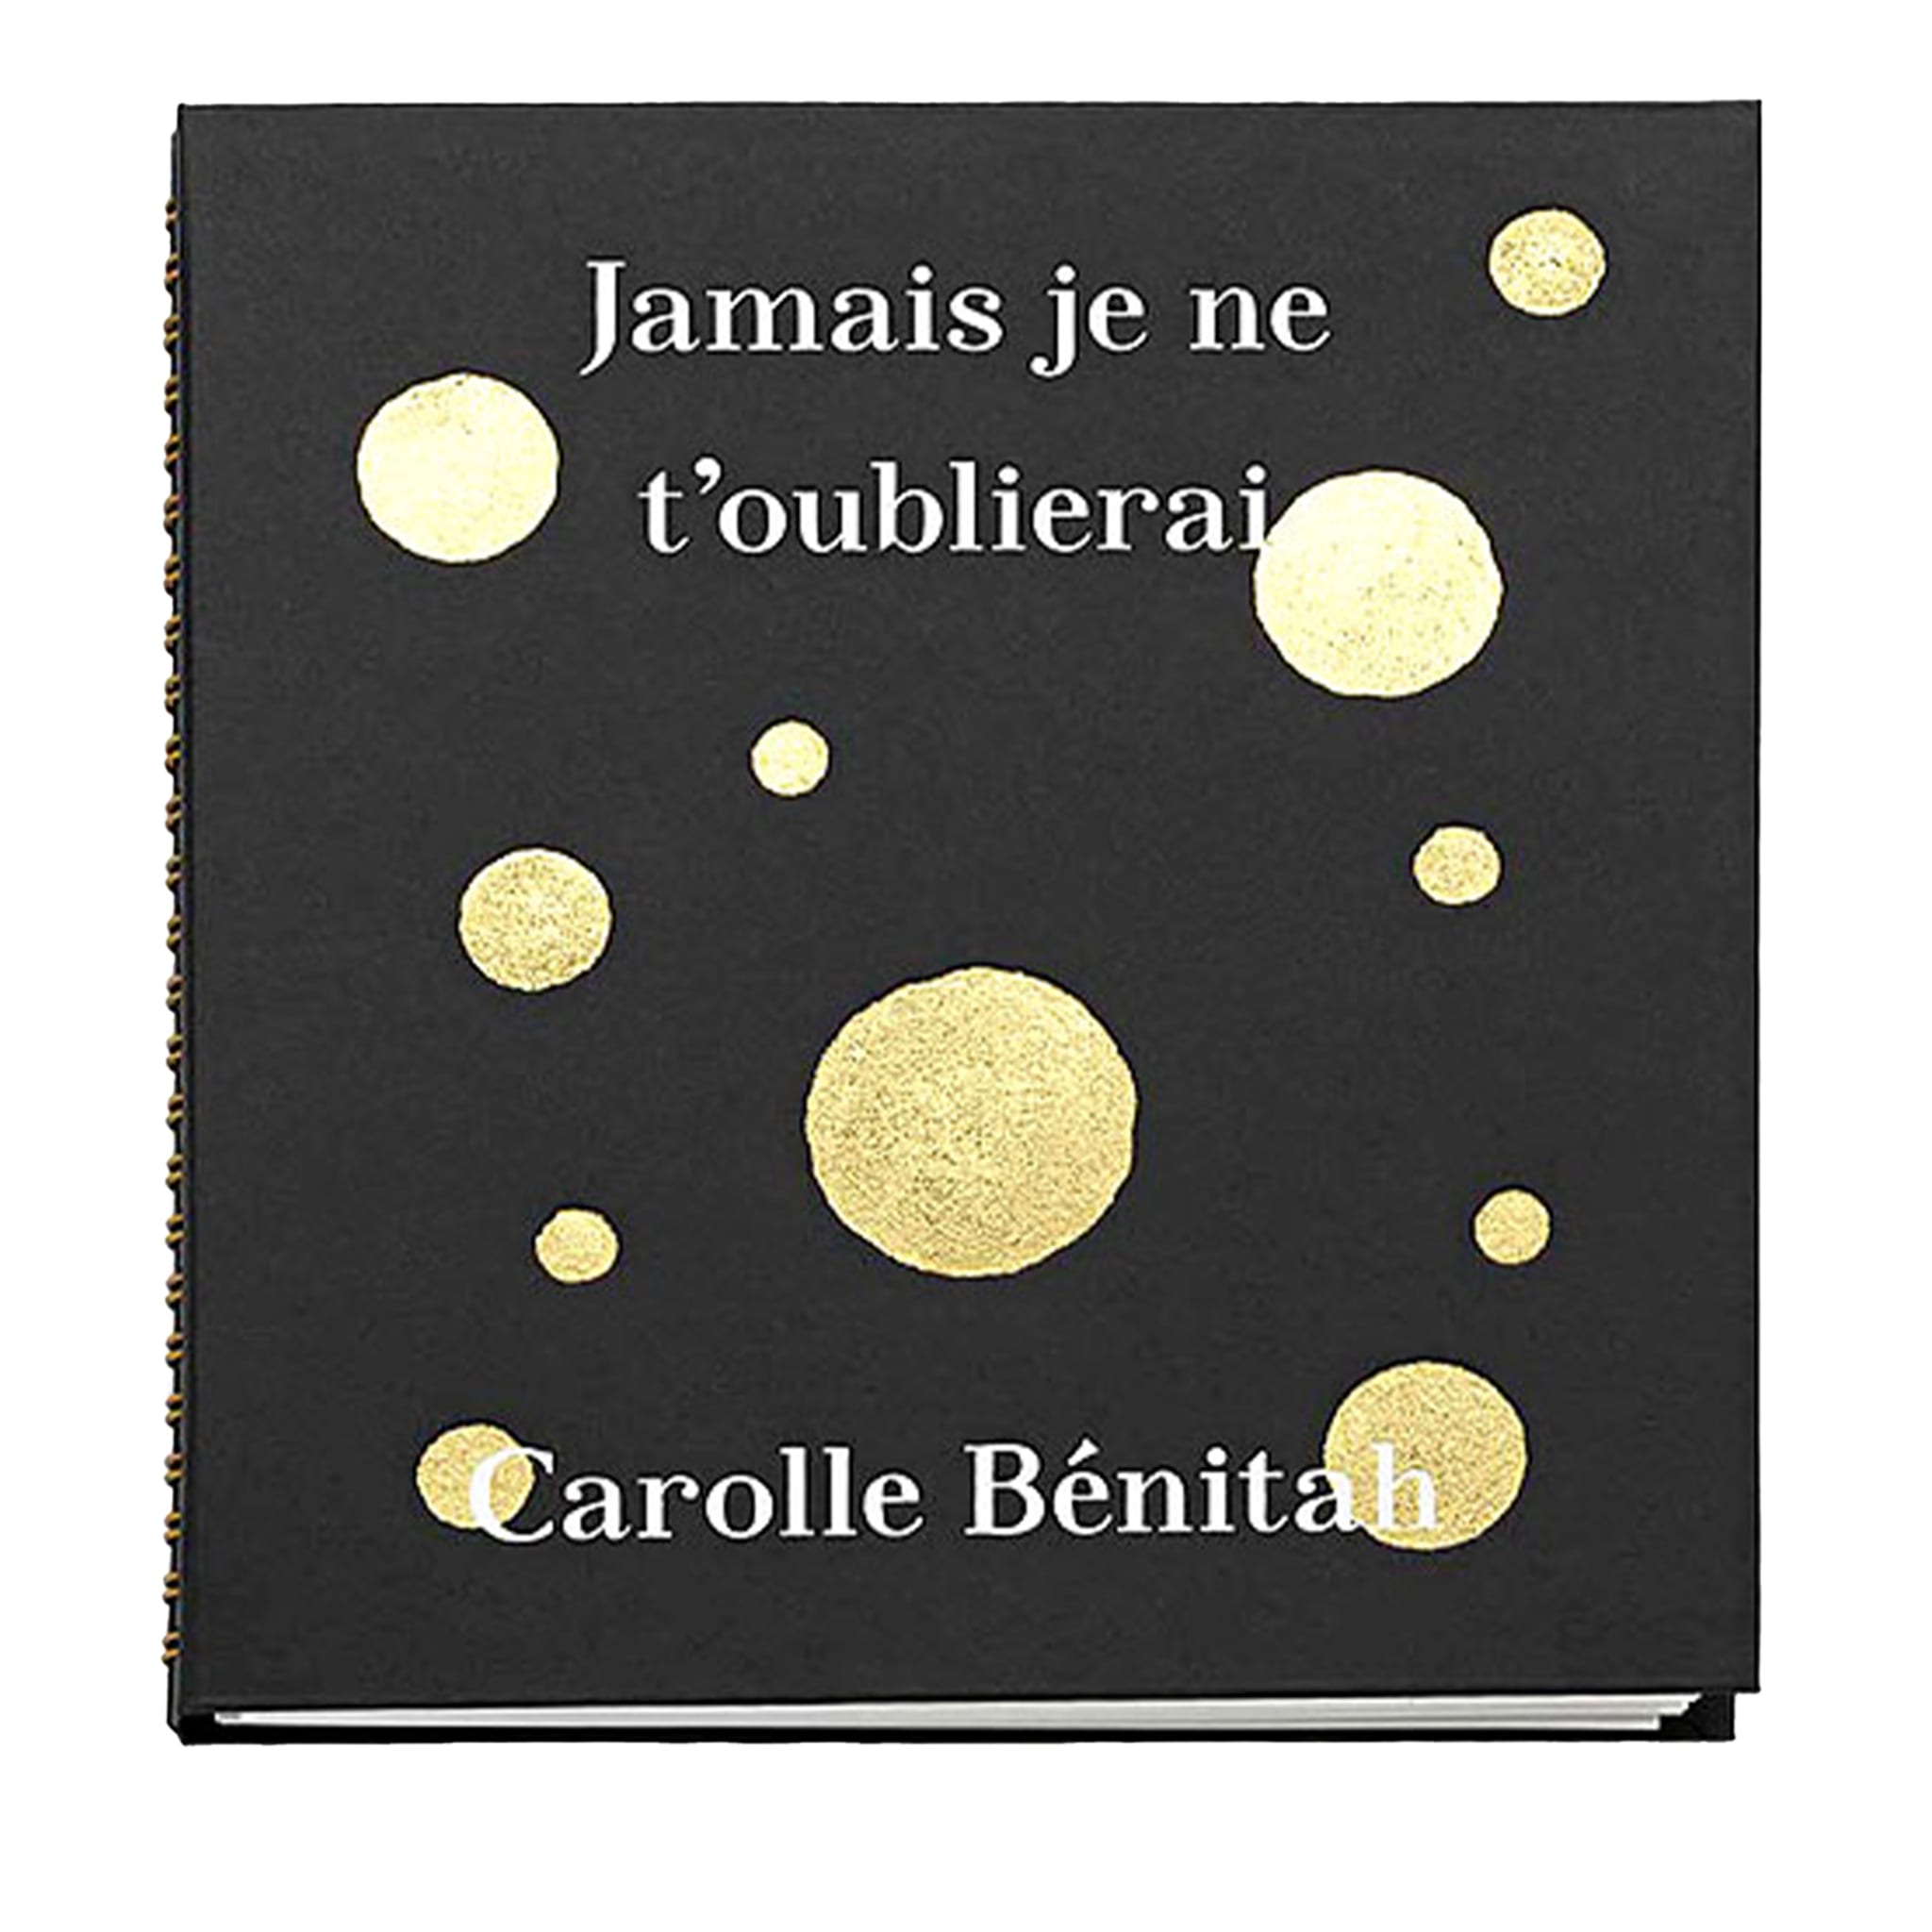 Jamais Je Ne T’Oublierai - Carolle Benitah - Limited Edition of 25 copies - Main view